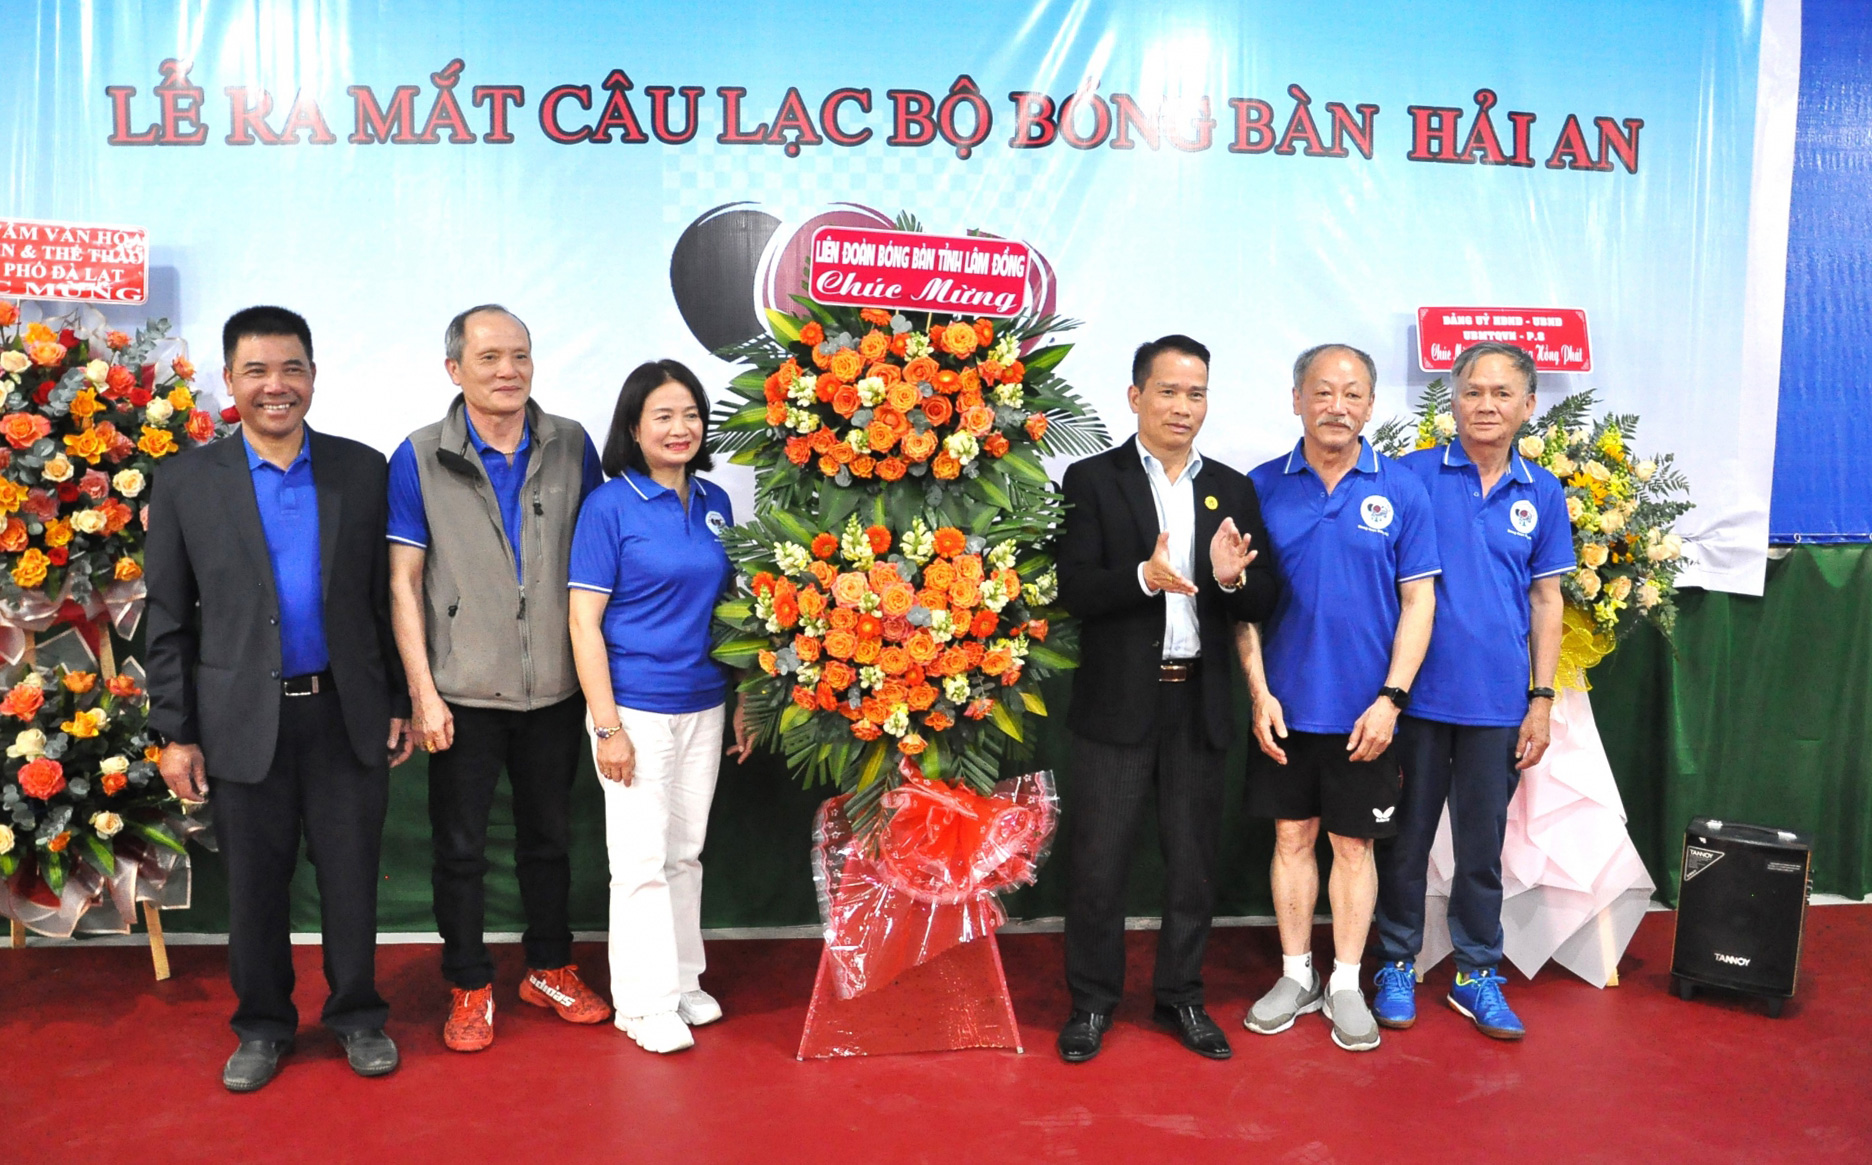 Liên đoàn Bóng bàn tỉnh Lâm Đồng tặng hoa cho Ban chủ nhiệm Bóng bàn Hải An